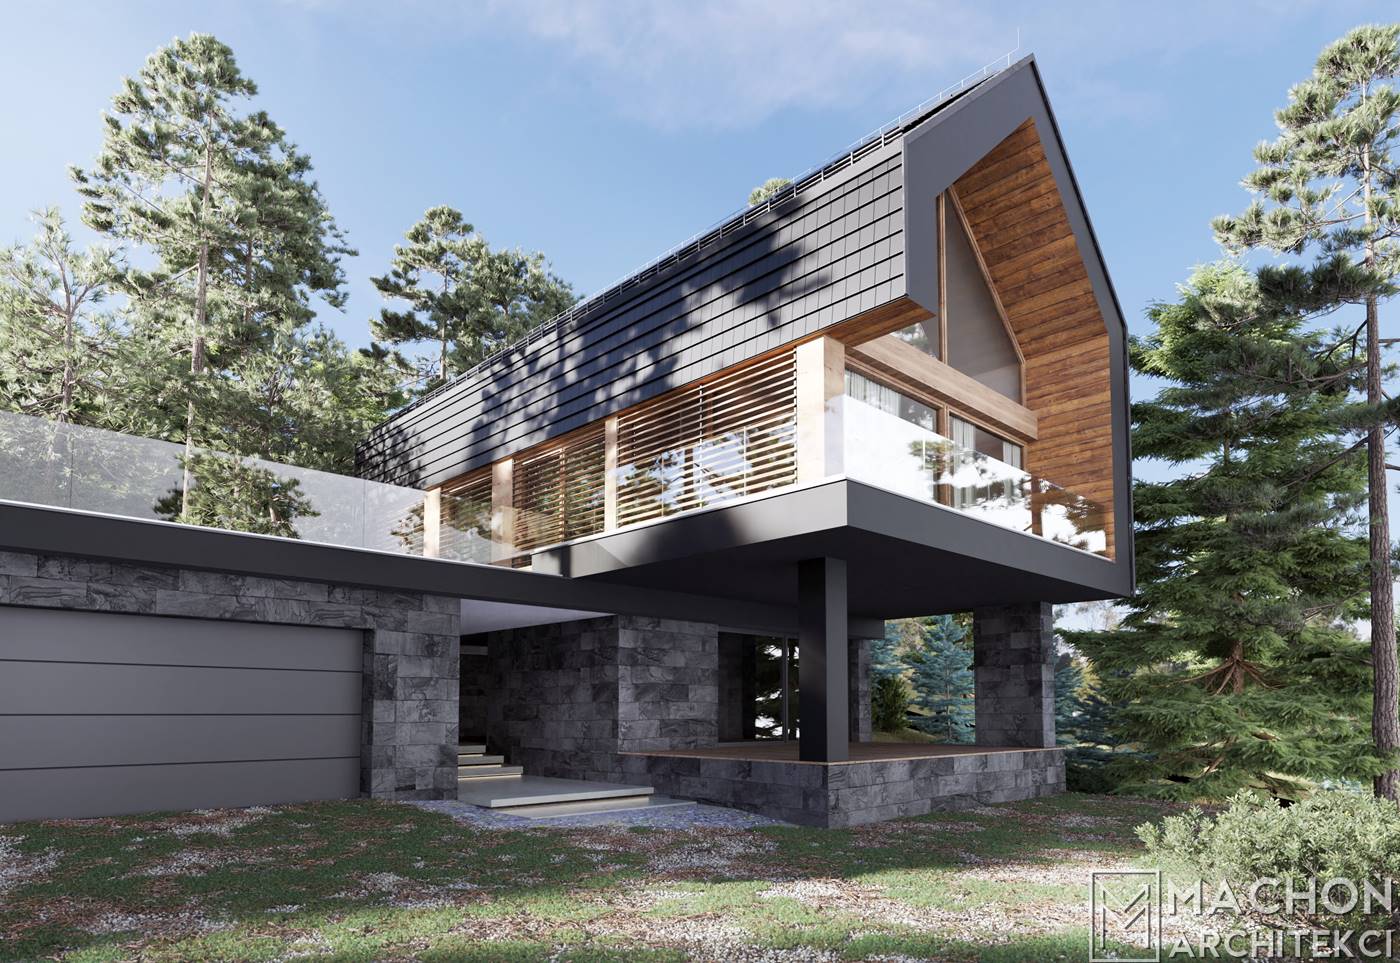 dom mieszkalny górach drewno nowoczesny dachówka architekci z małopolski piwniczna zdrój kraków nowoczesna forma